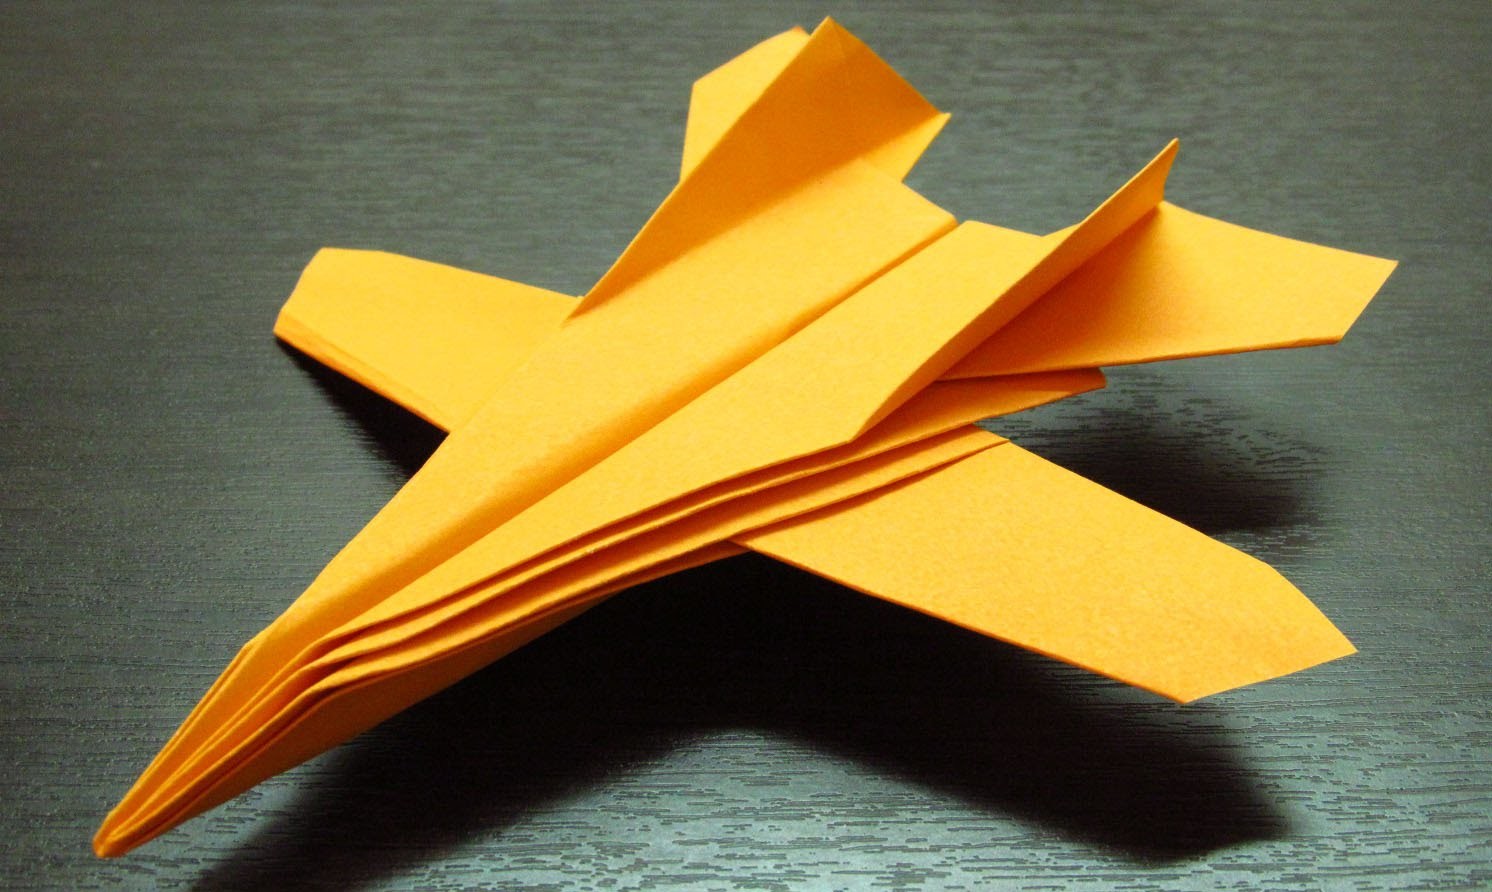 Como hacer un avion de papel F-14 paso a paso en español (Muy fácil)